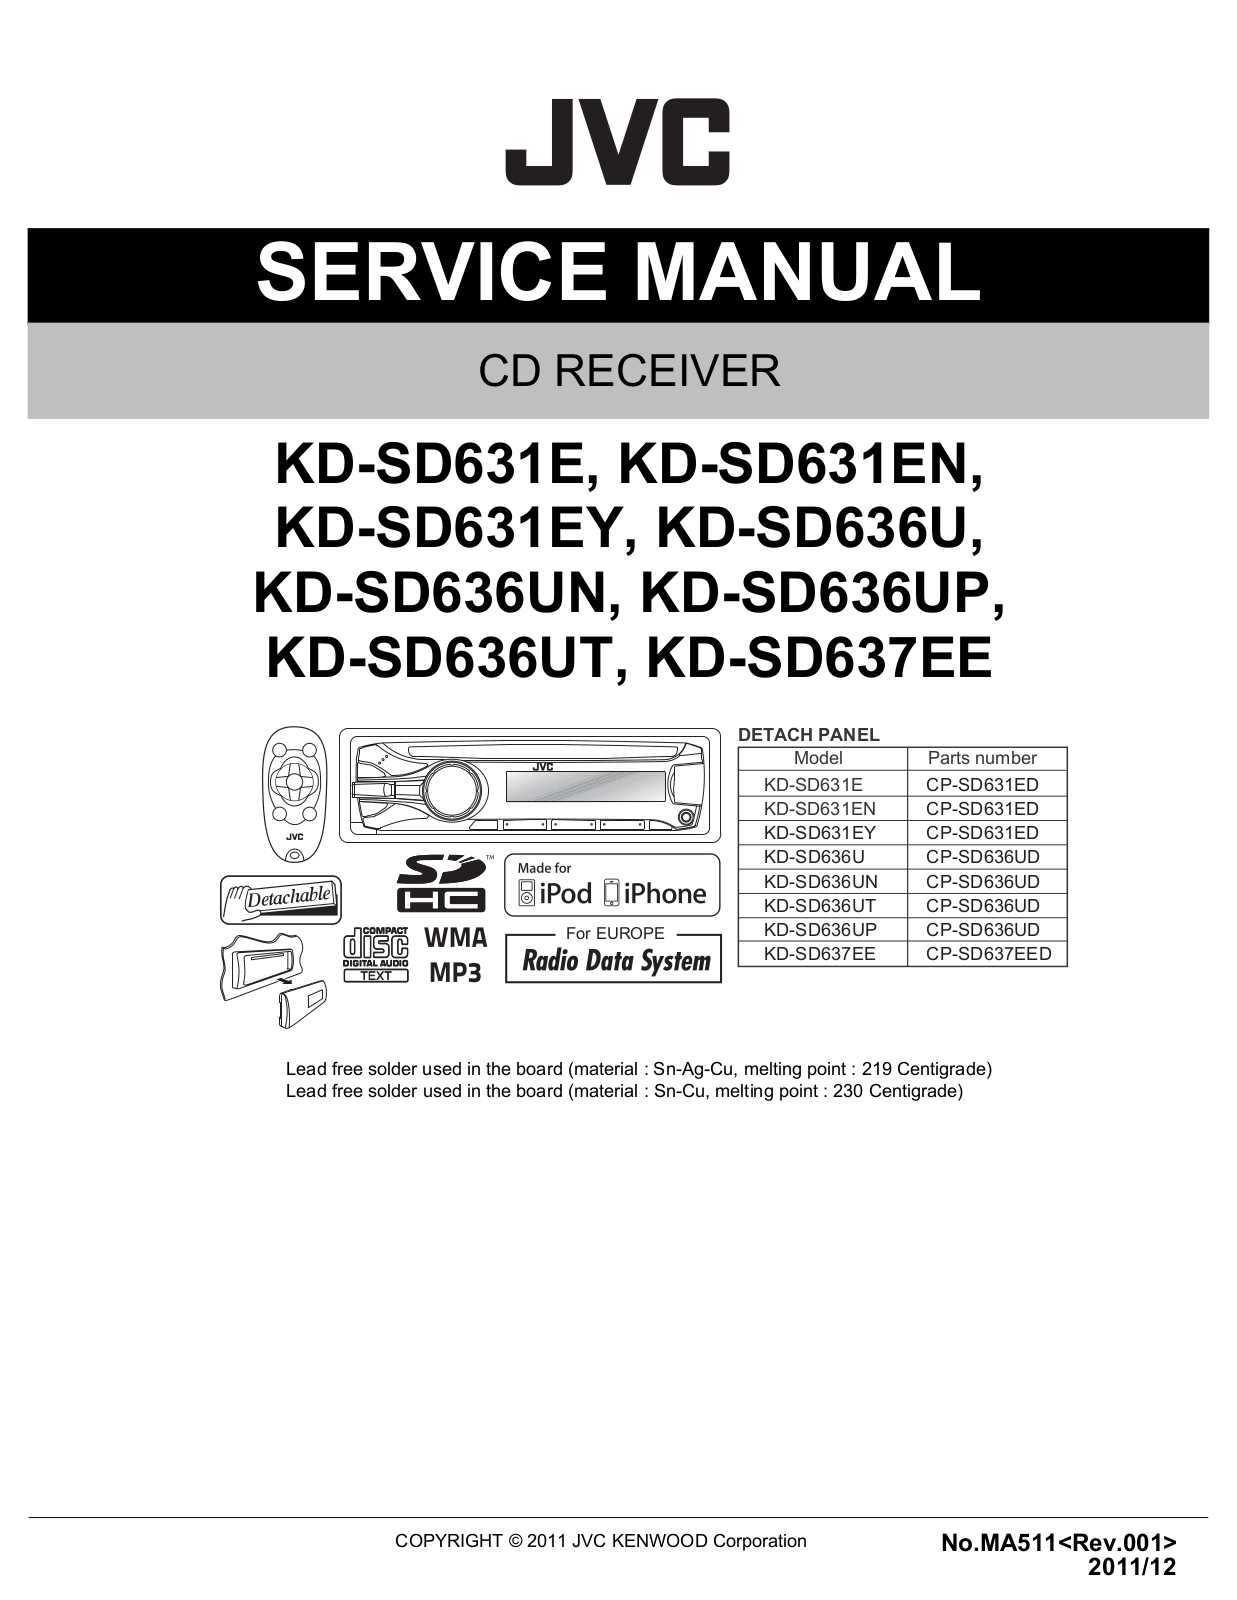 JVC KD-SD631, KD-SD636, KD-SD637 Service manual